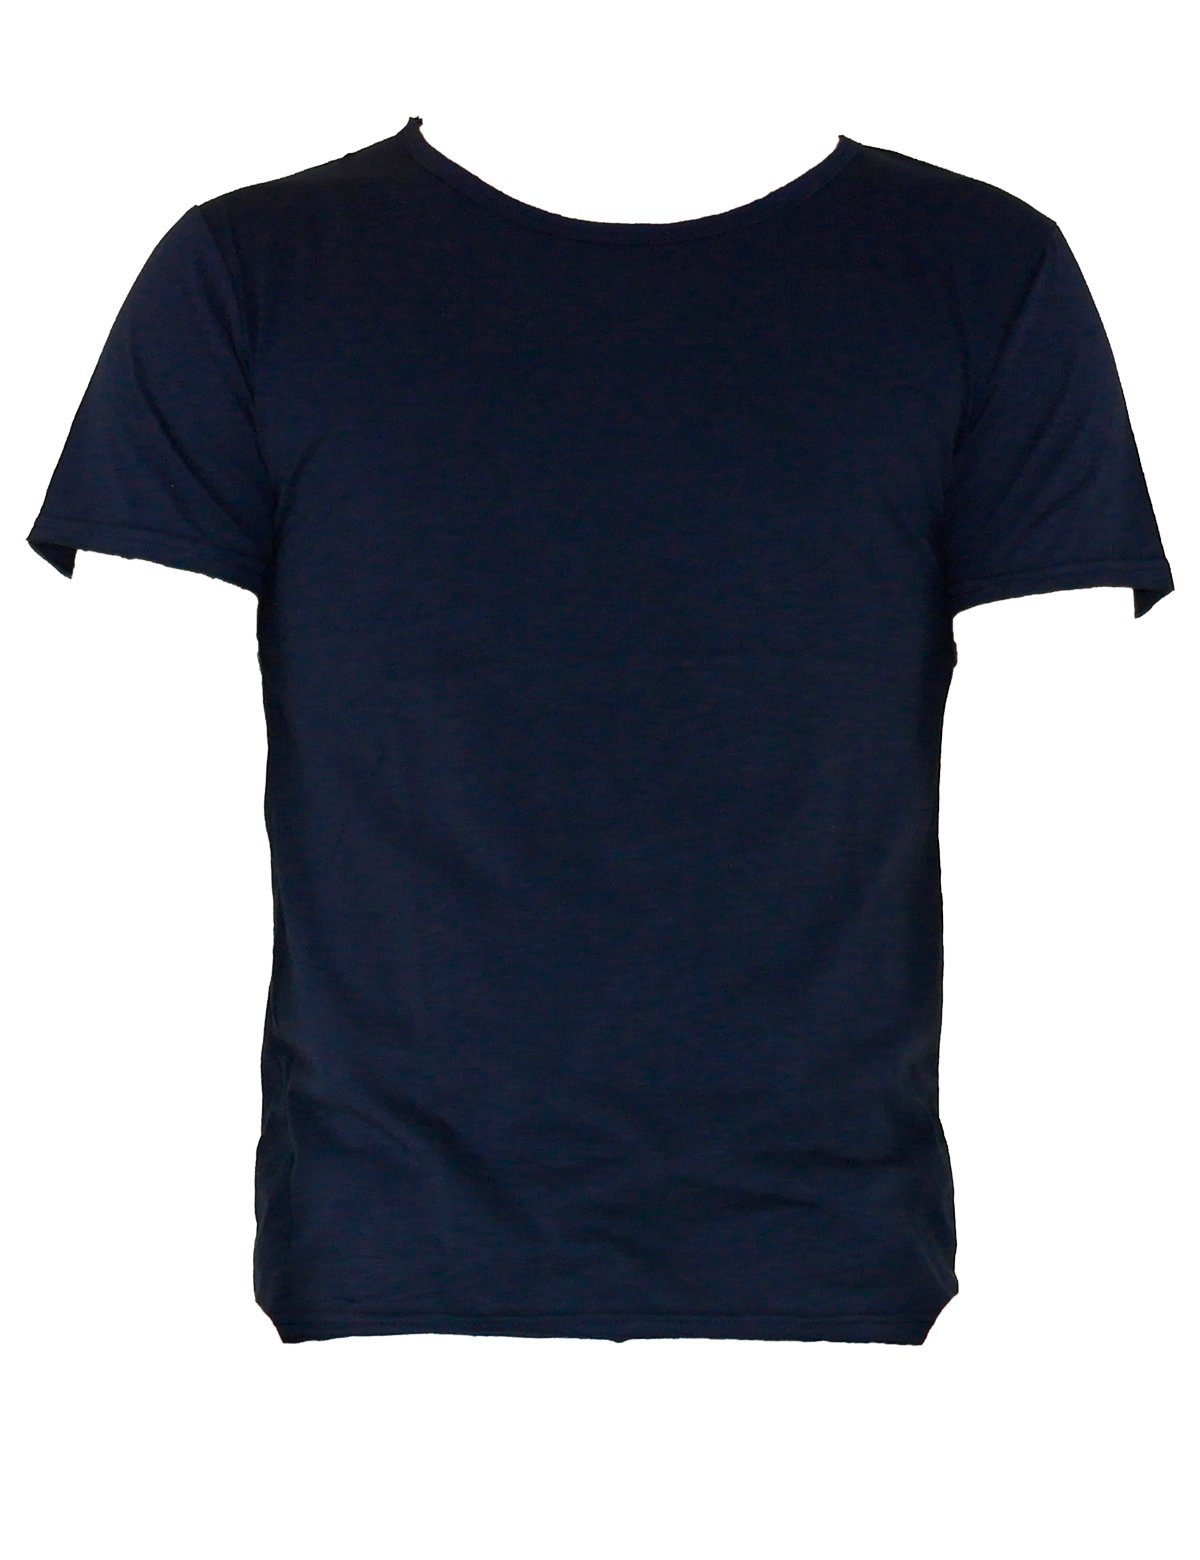 YESET T-Shirt Herren Dunkelblau Figurbetont Top Poloshirt 551 T-Shirt Tank Shirt Hemd Kurzarm